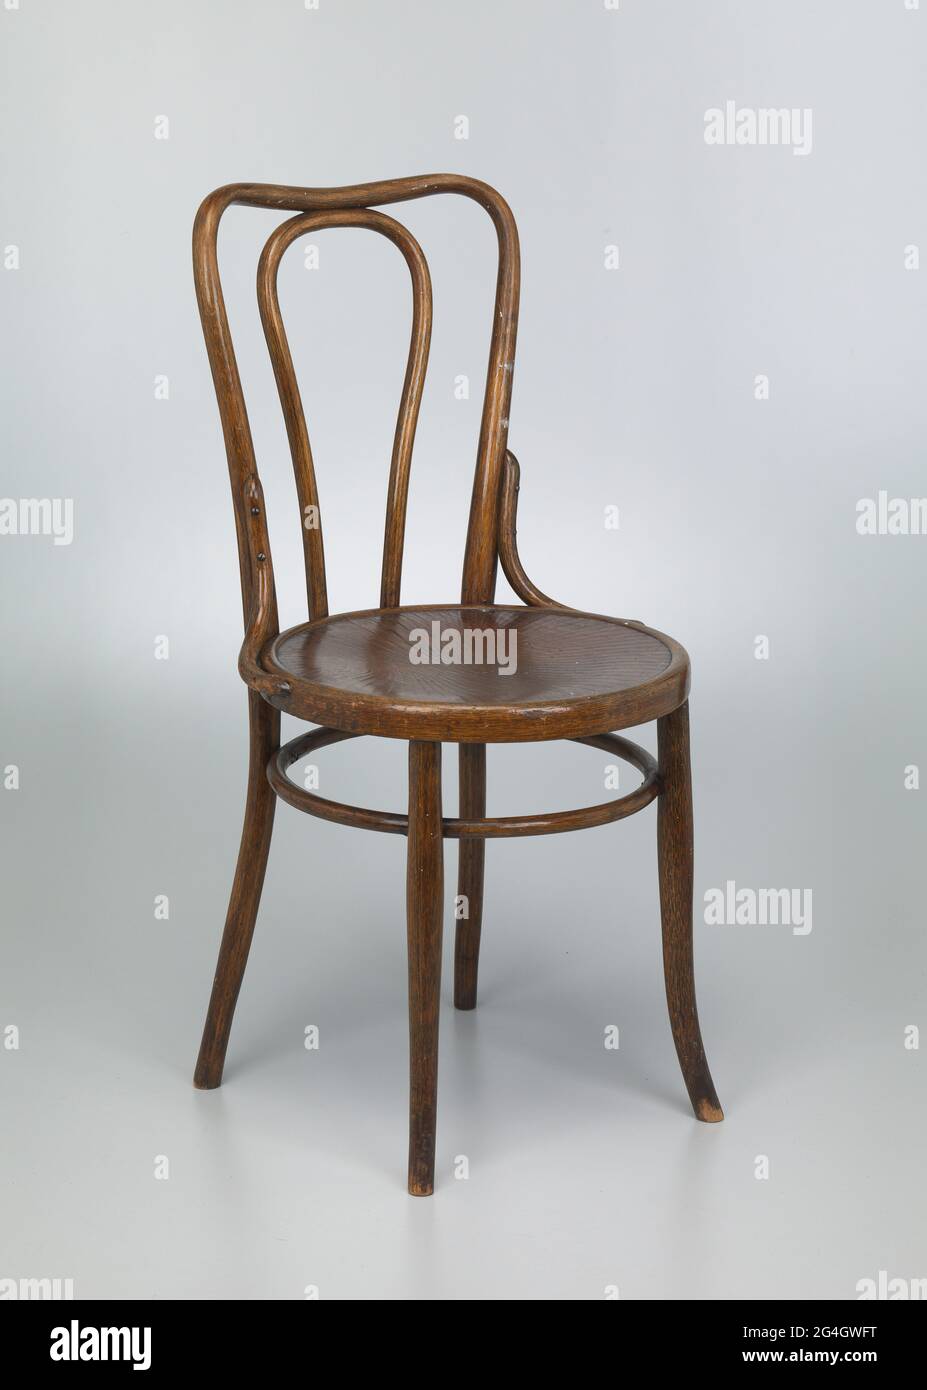 Silla bentwood de madera de cuatro patas. El asiento de la silla es redondo  con crestas talladas y poco profundas en la parte superior del asiento. Las  crestas se encuentran en formas